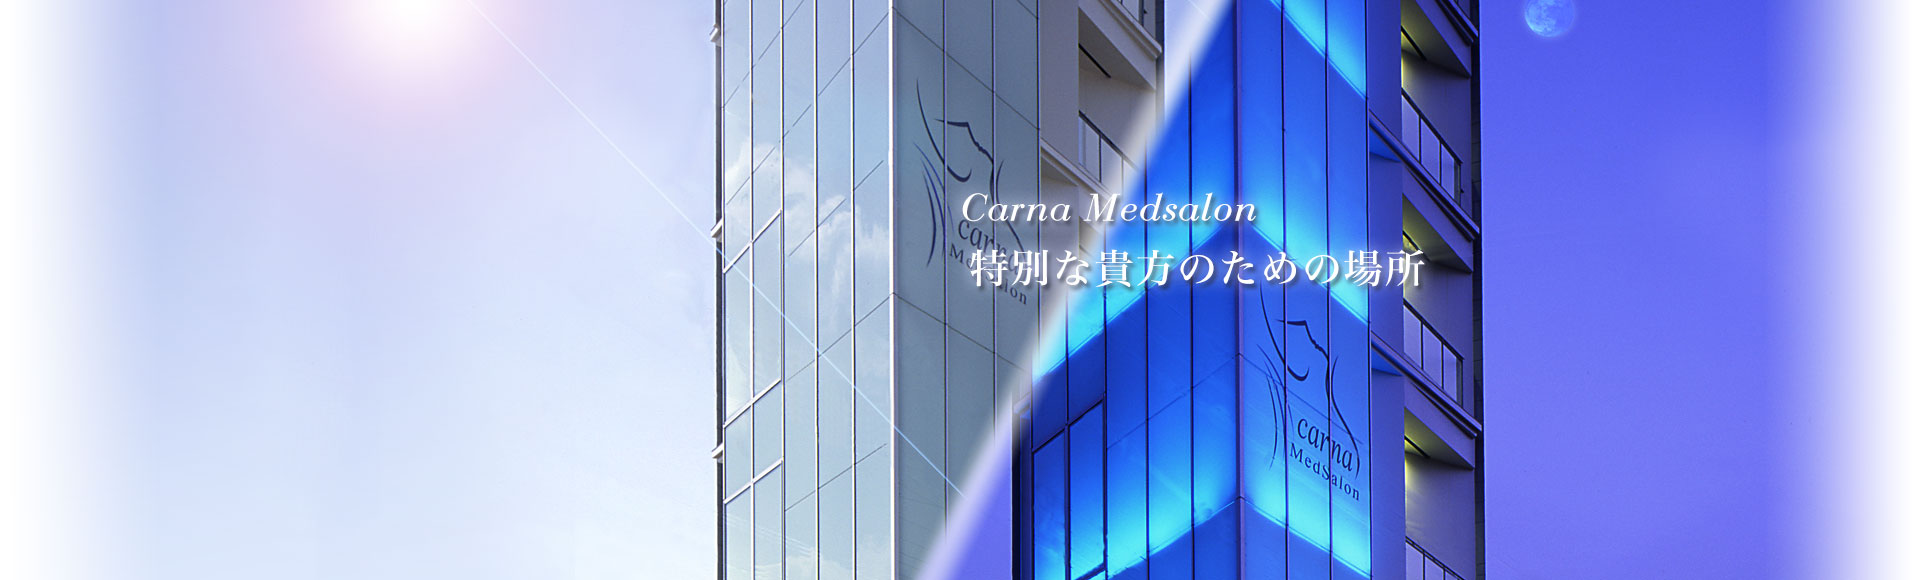 Carna-Medsalon｜特別な貴方のための場所